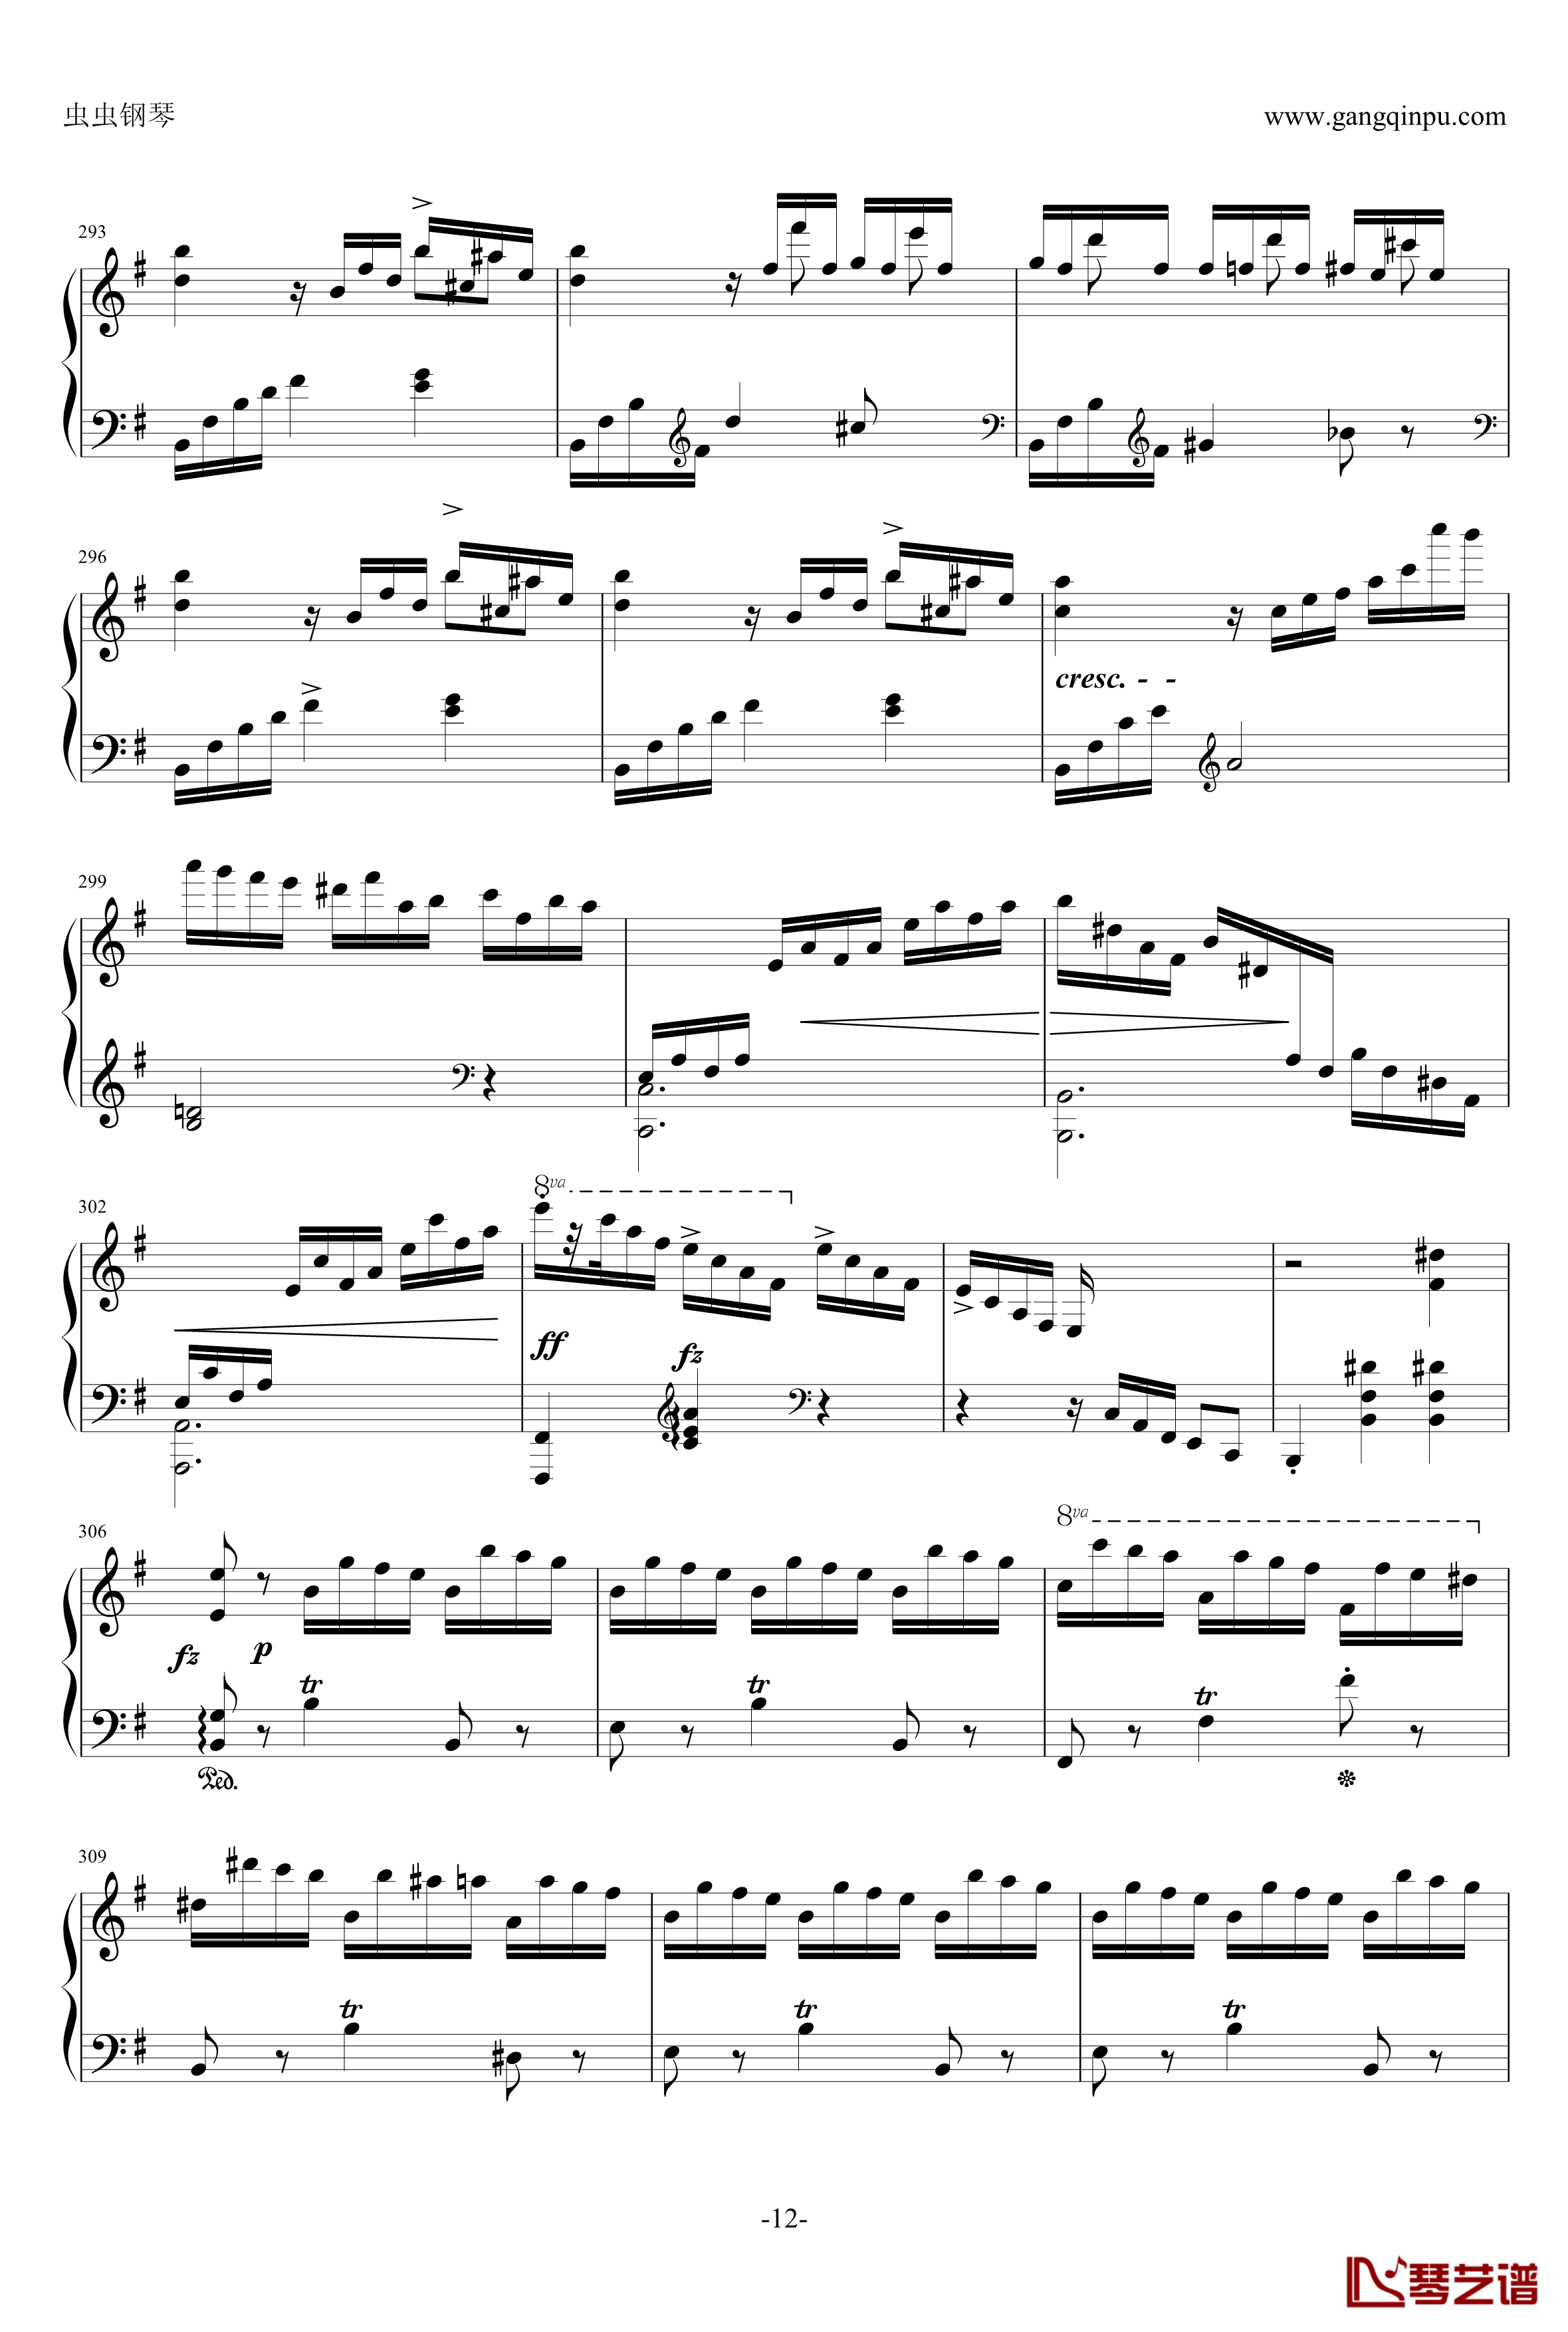 e小调钢琴协奏曲钢琴谱-乐之琴简易钢琴版-肖邦-chopin12